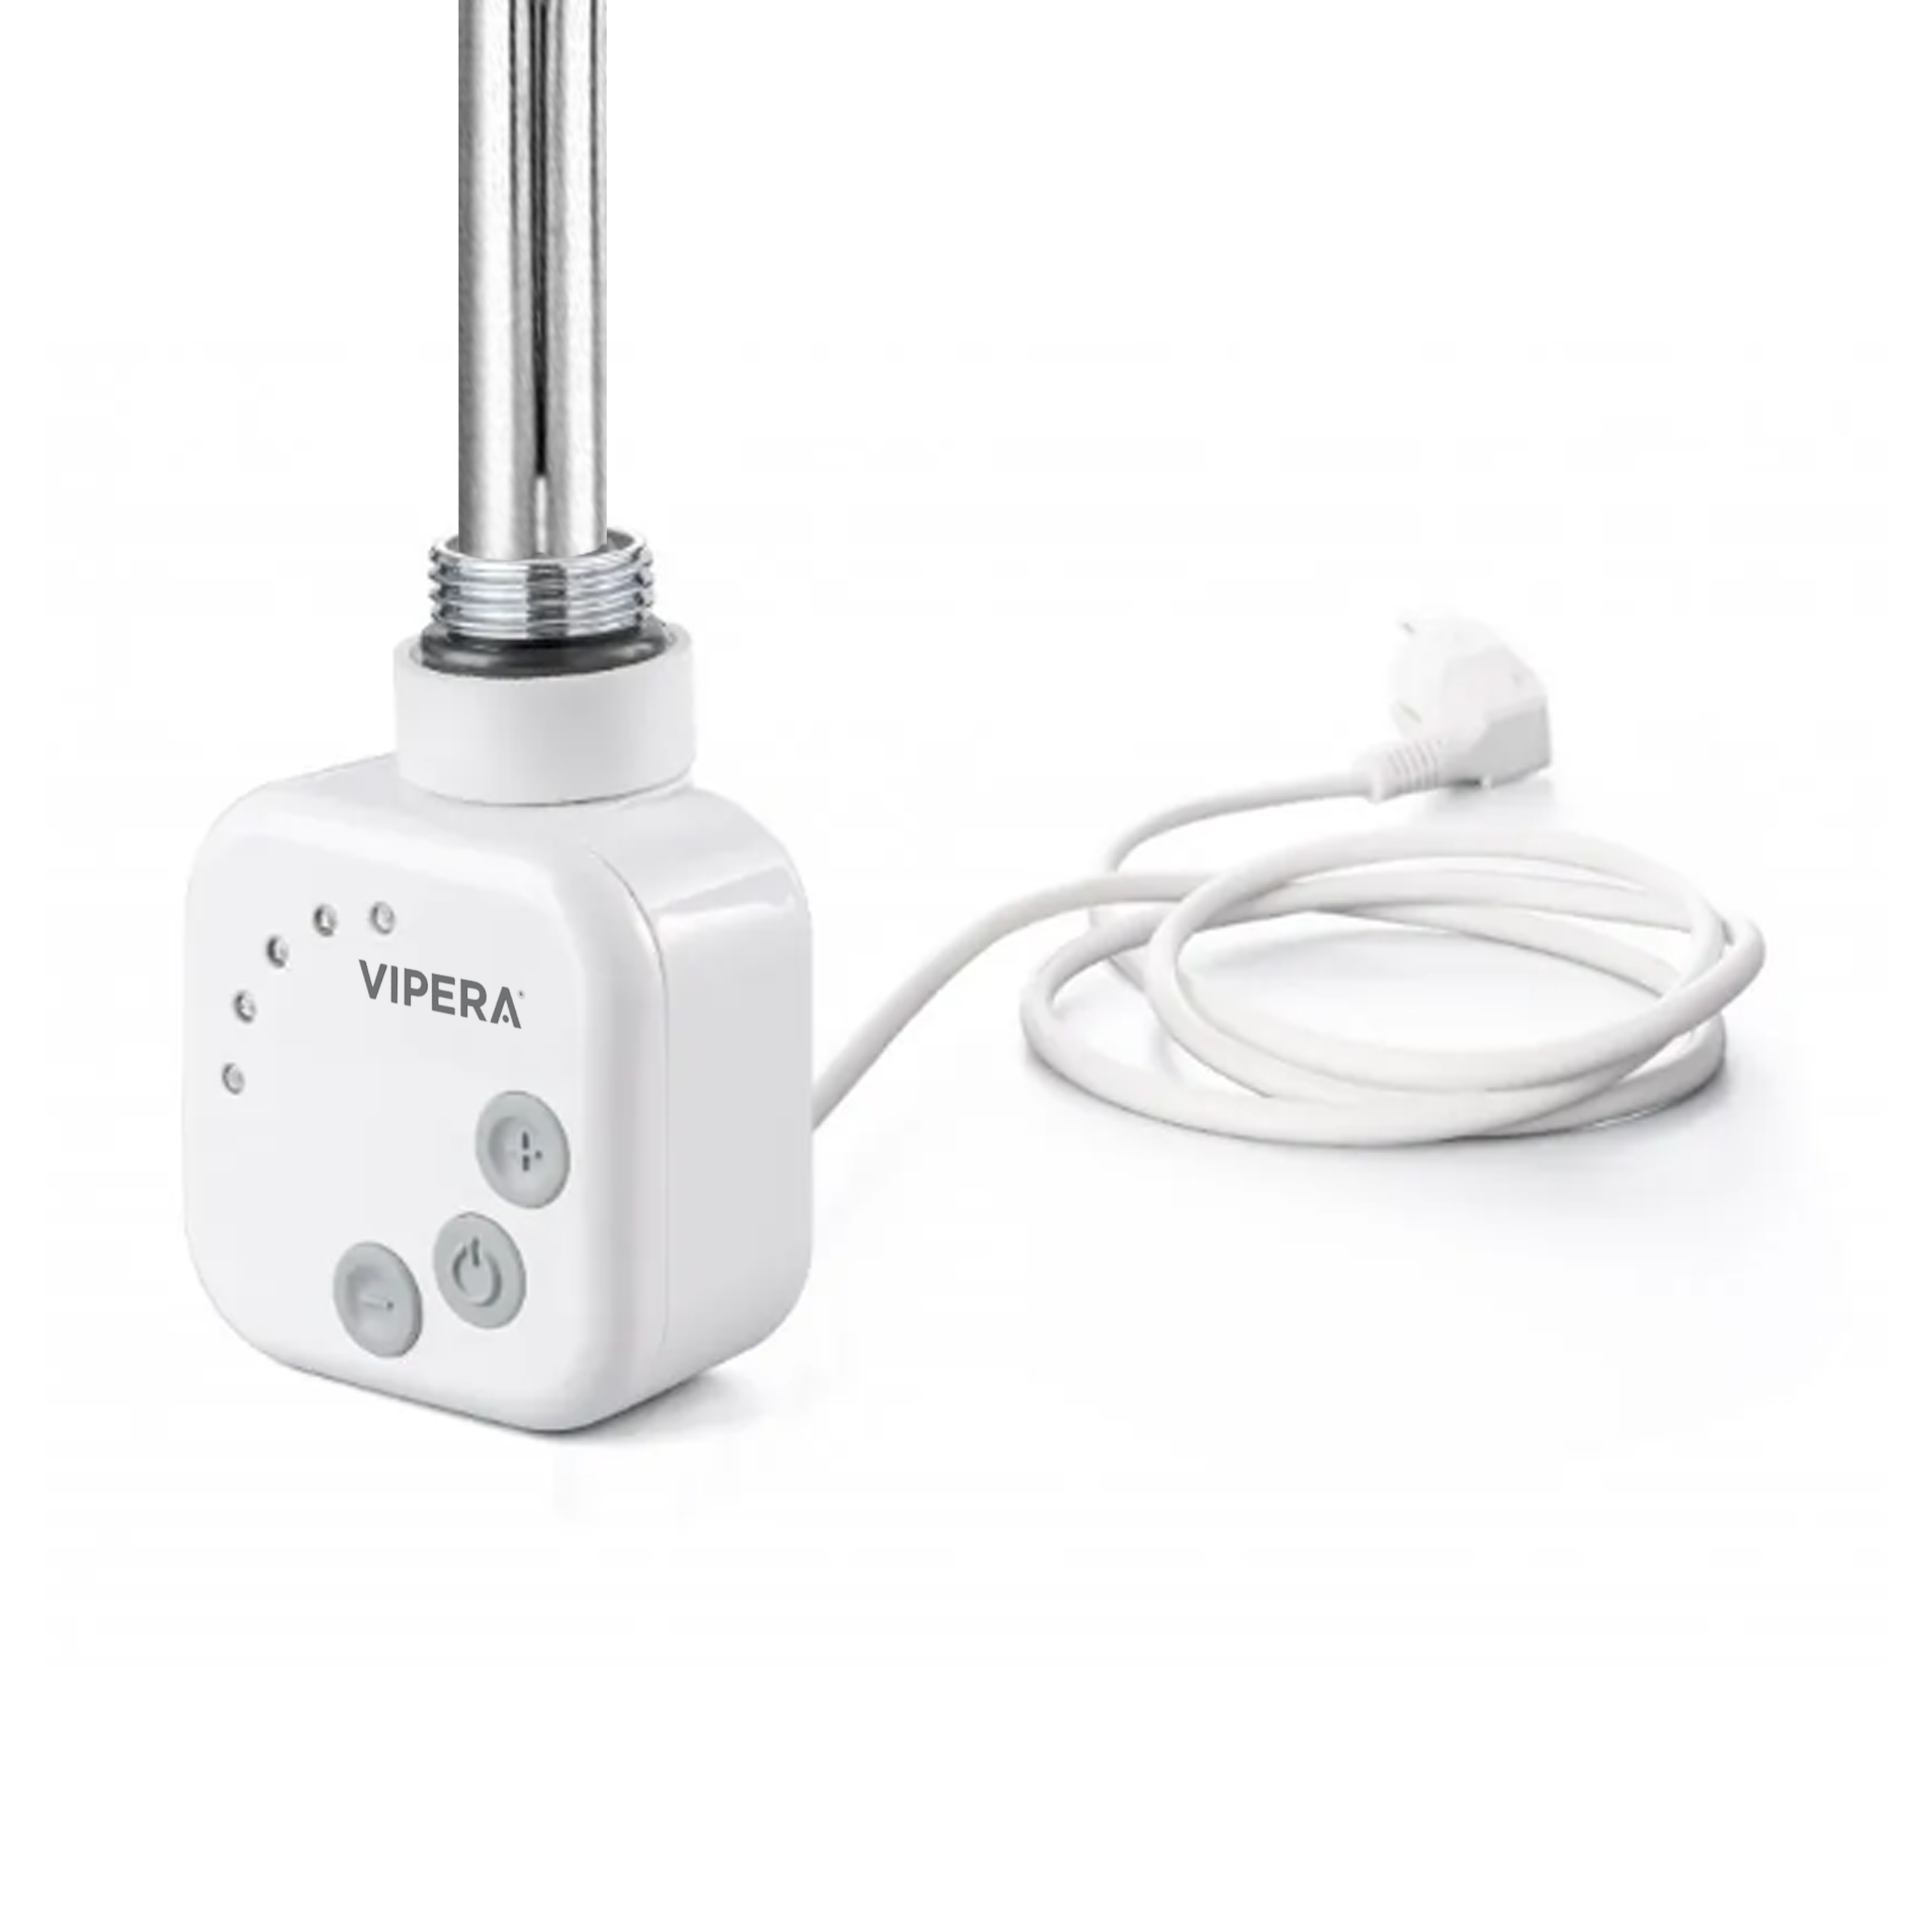 Vipera radiator thermostaat voor elektrische handdoekradiator 500W analoog wit